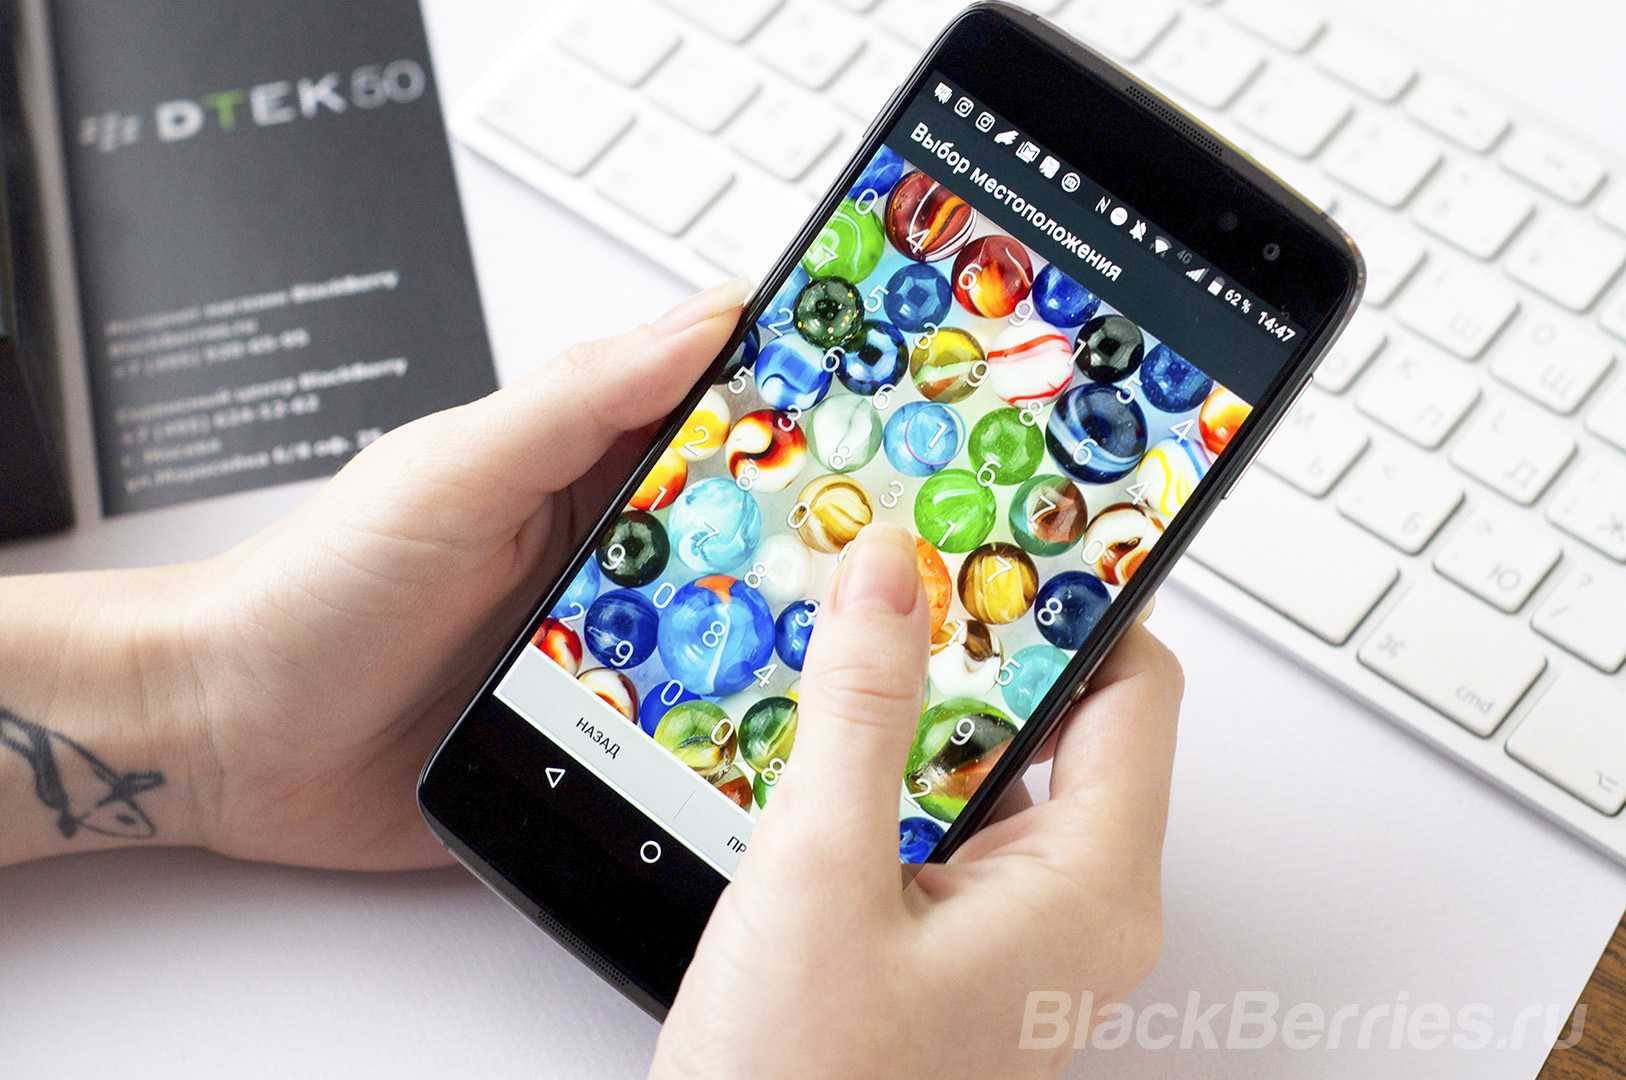 Blackberry dtek60 - купить  в санкт-петербург, скидки, цена, отзывы, обзор, характеристики - мобильные телефоны